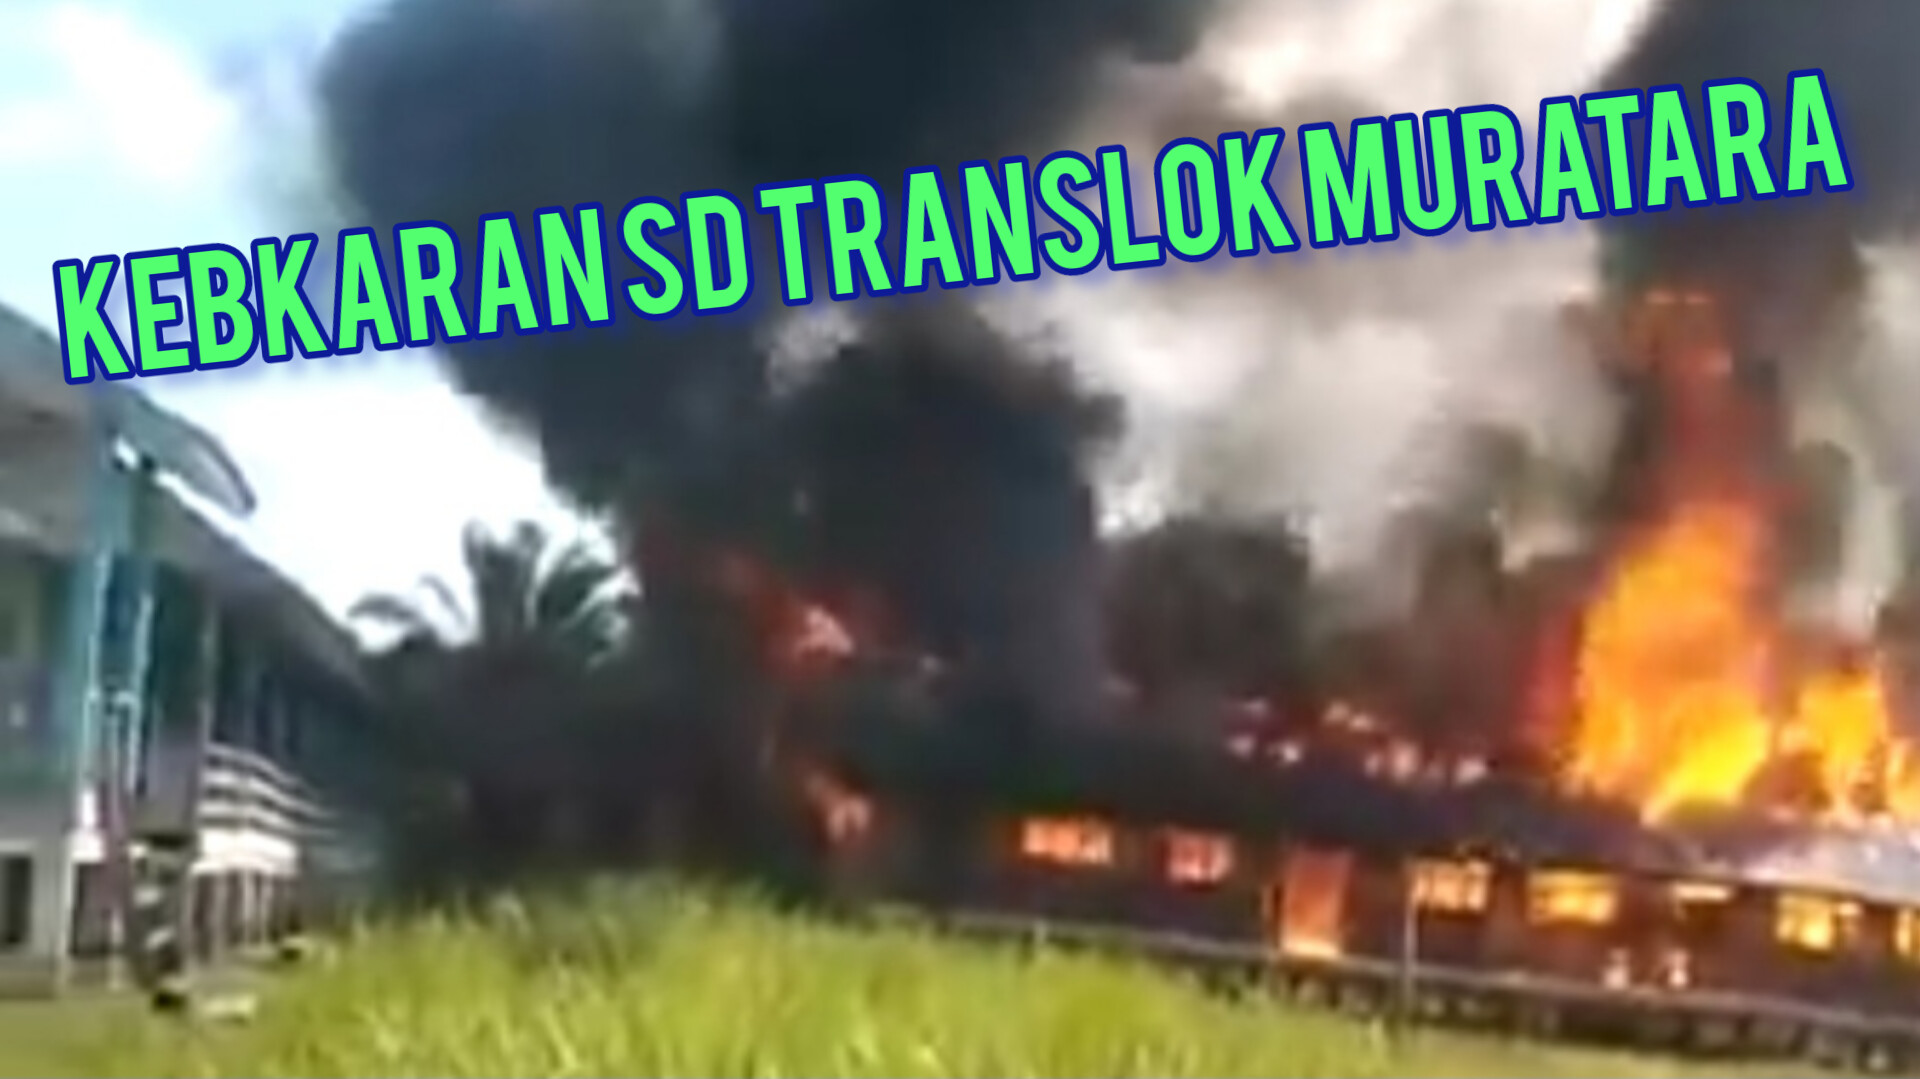 BREAKING NEWS: Bangunan SD Translok di Muratara Terbakar